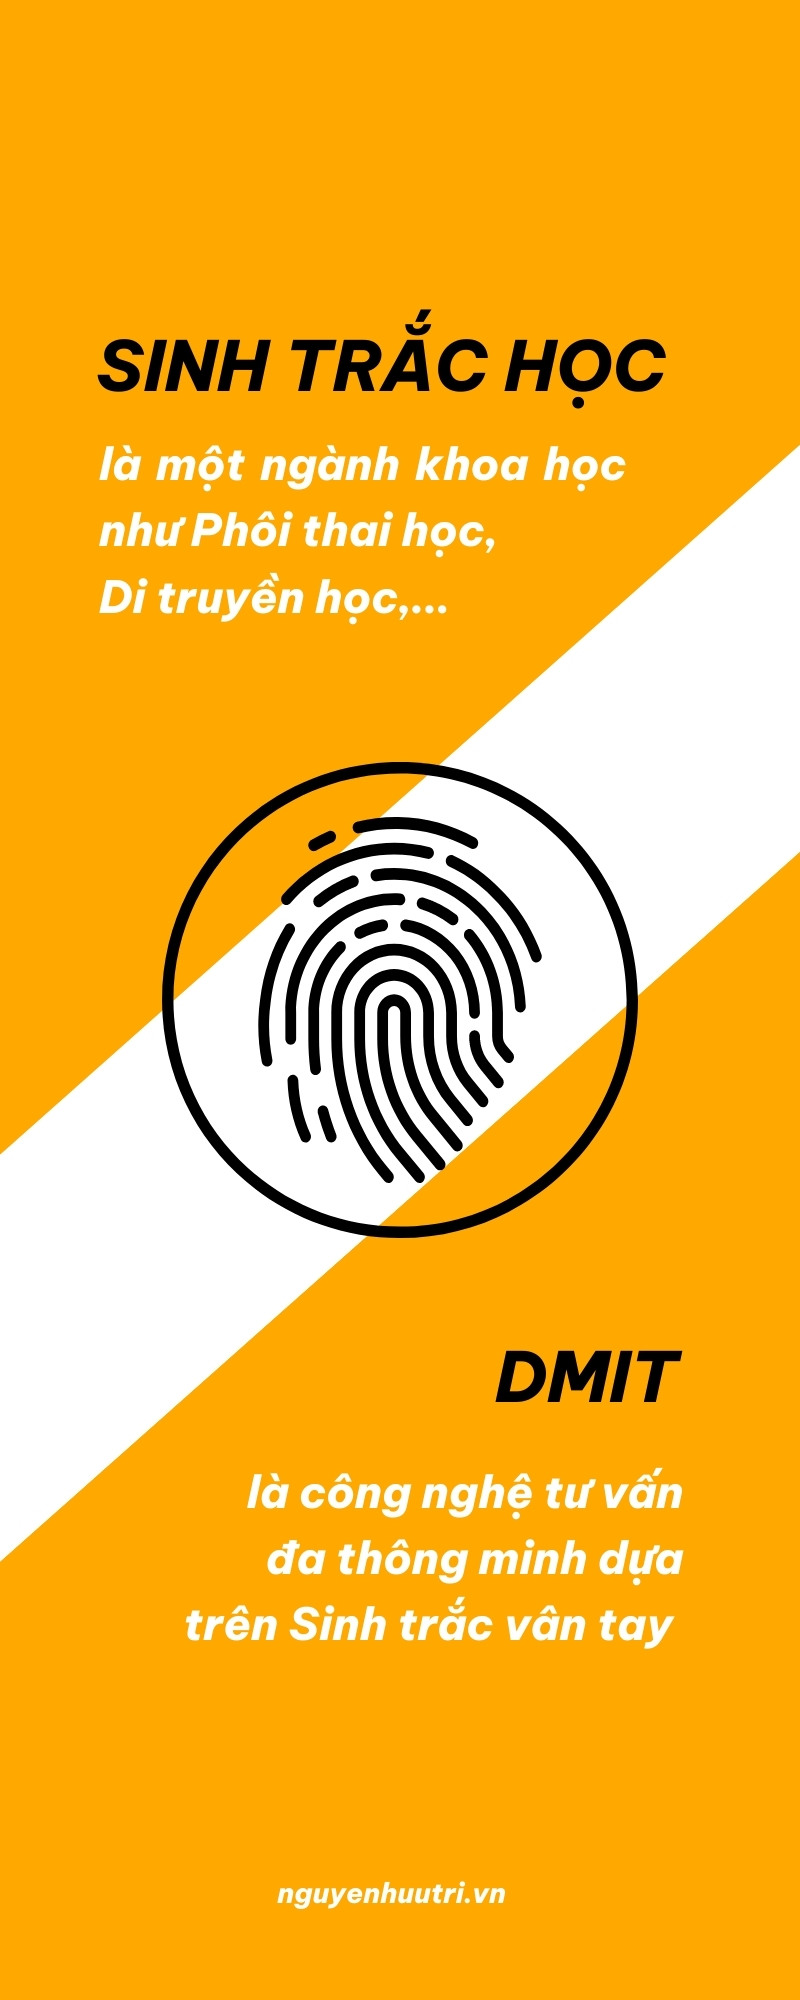 Phân biệt DMIT và sinh trắc vân tay